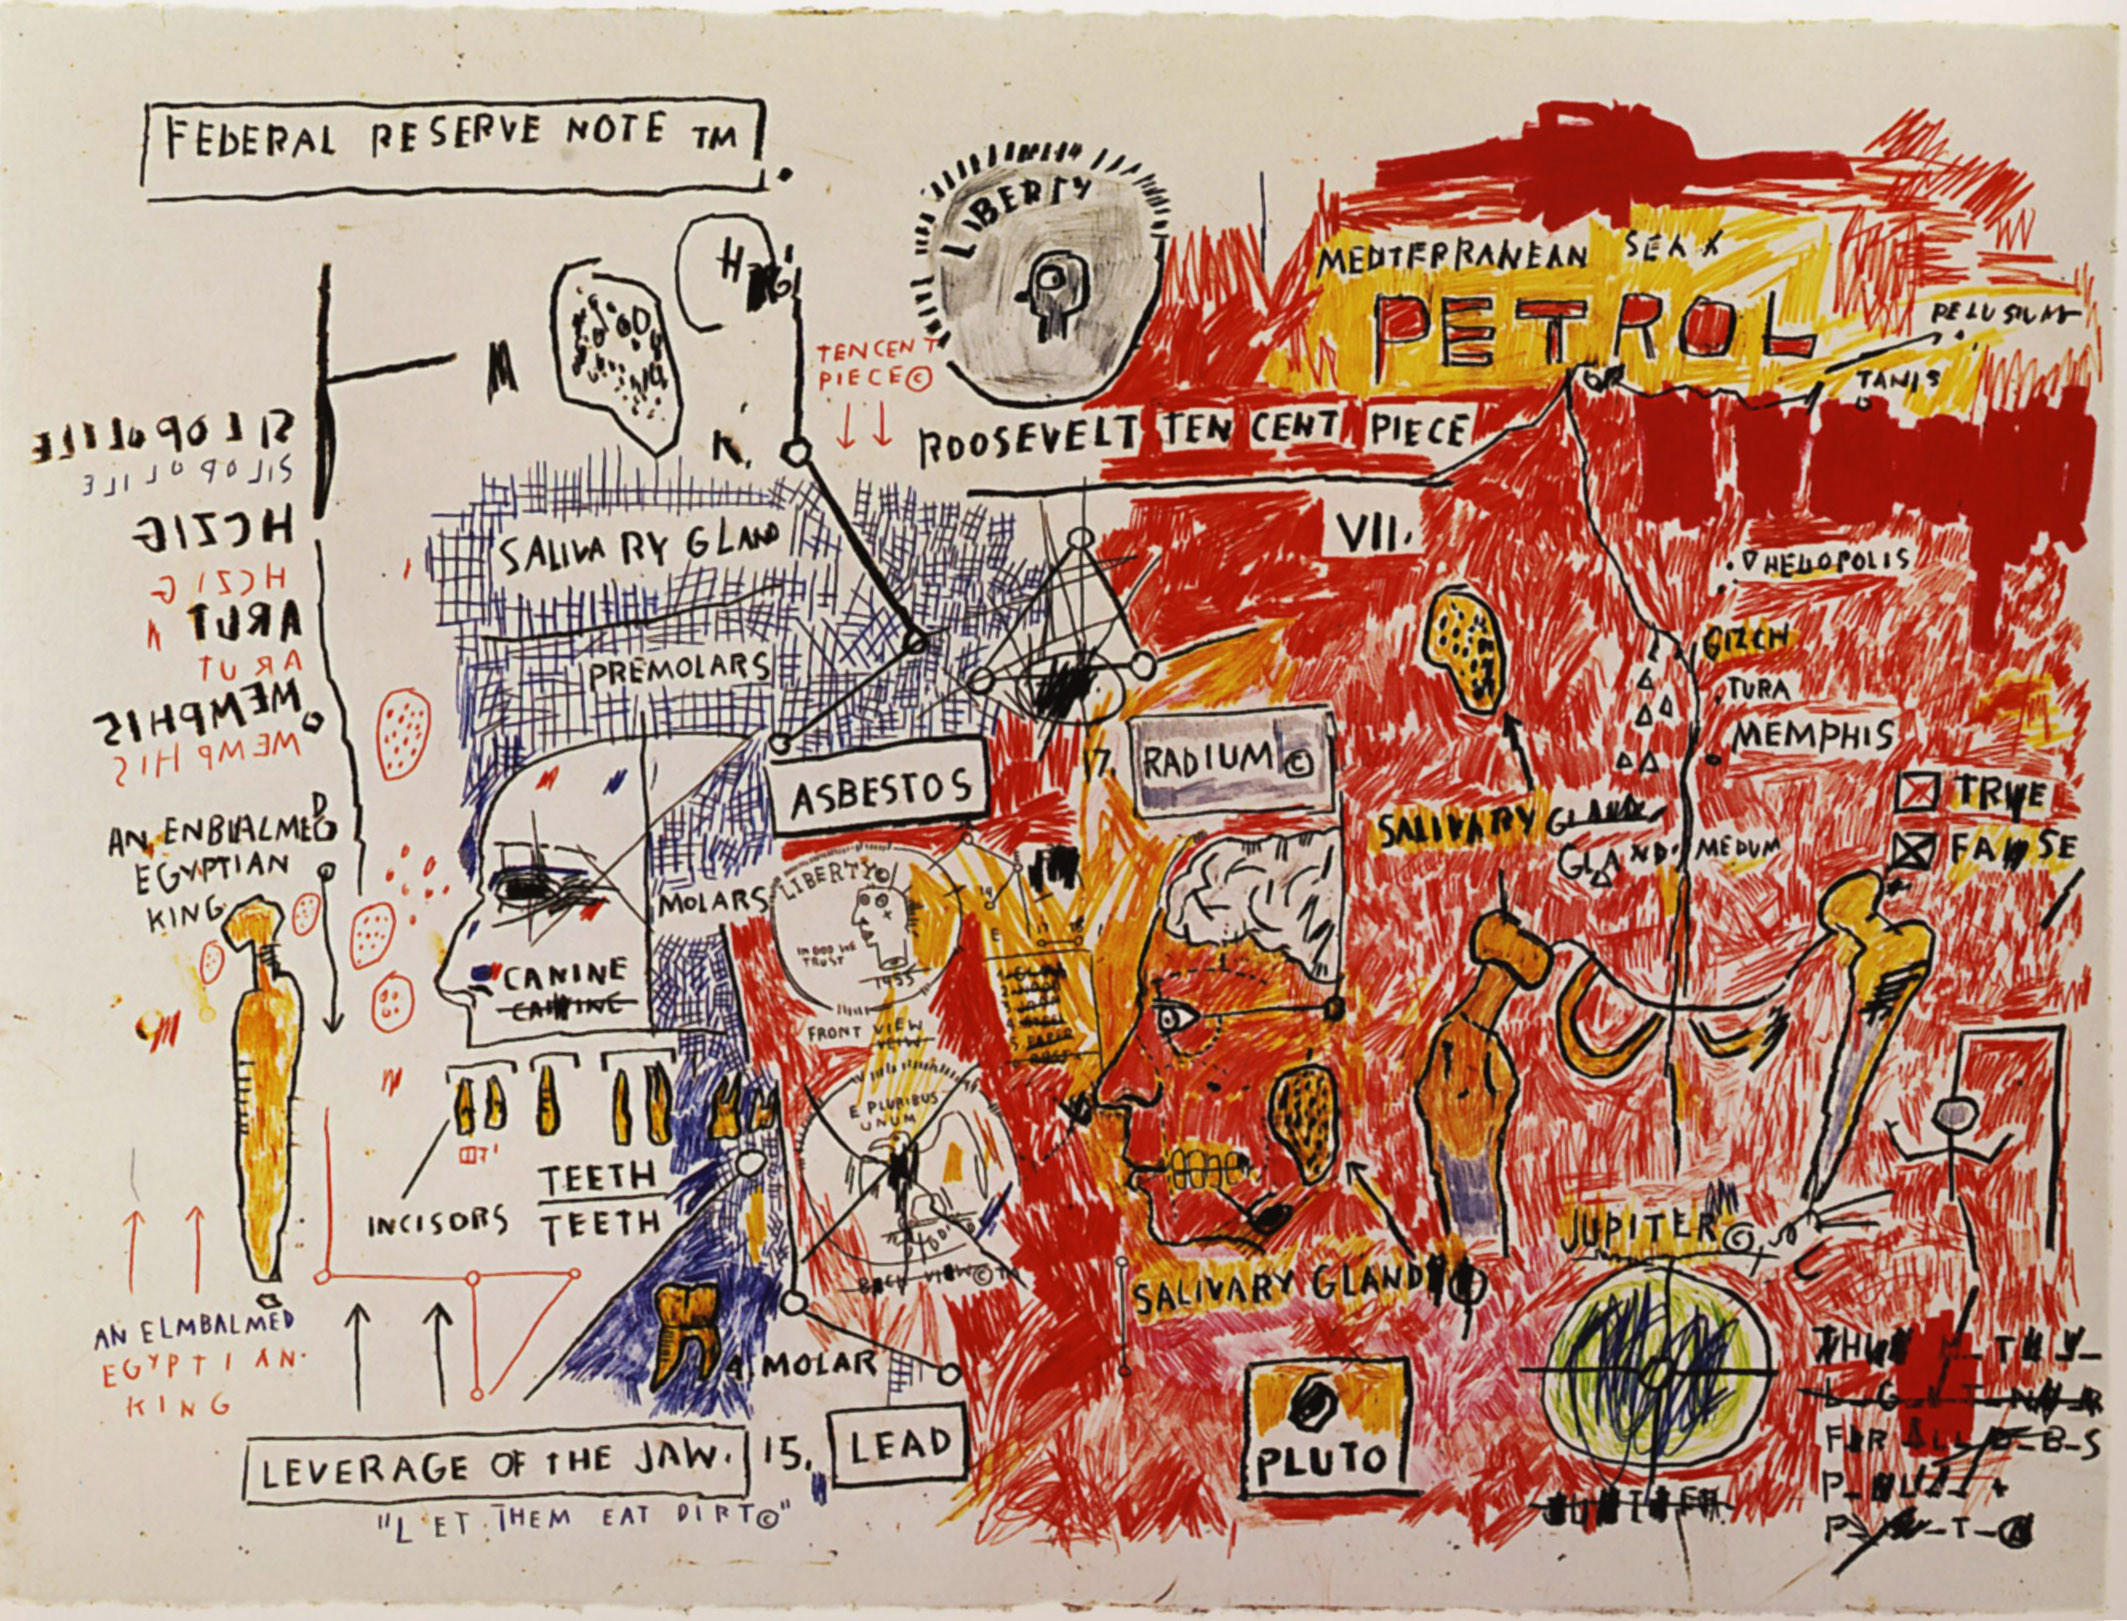 Extrait de Pez Dispenser 1984 JeanMichel Basquiat  Flickr